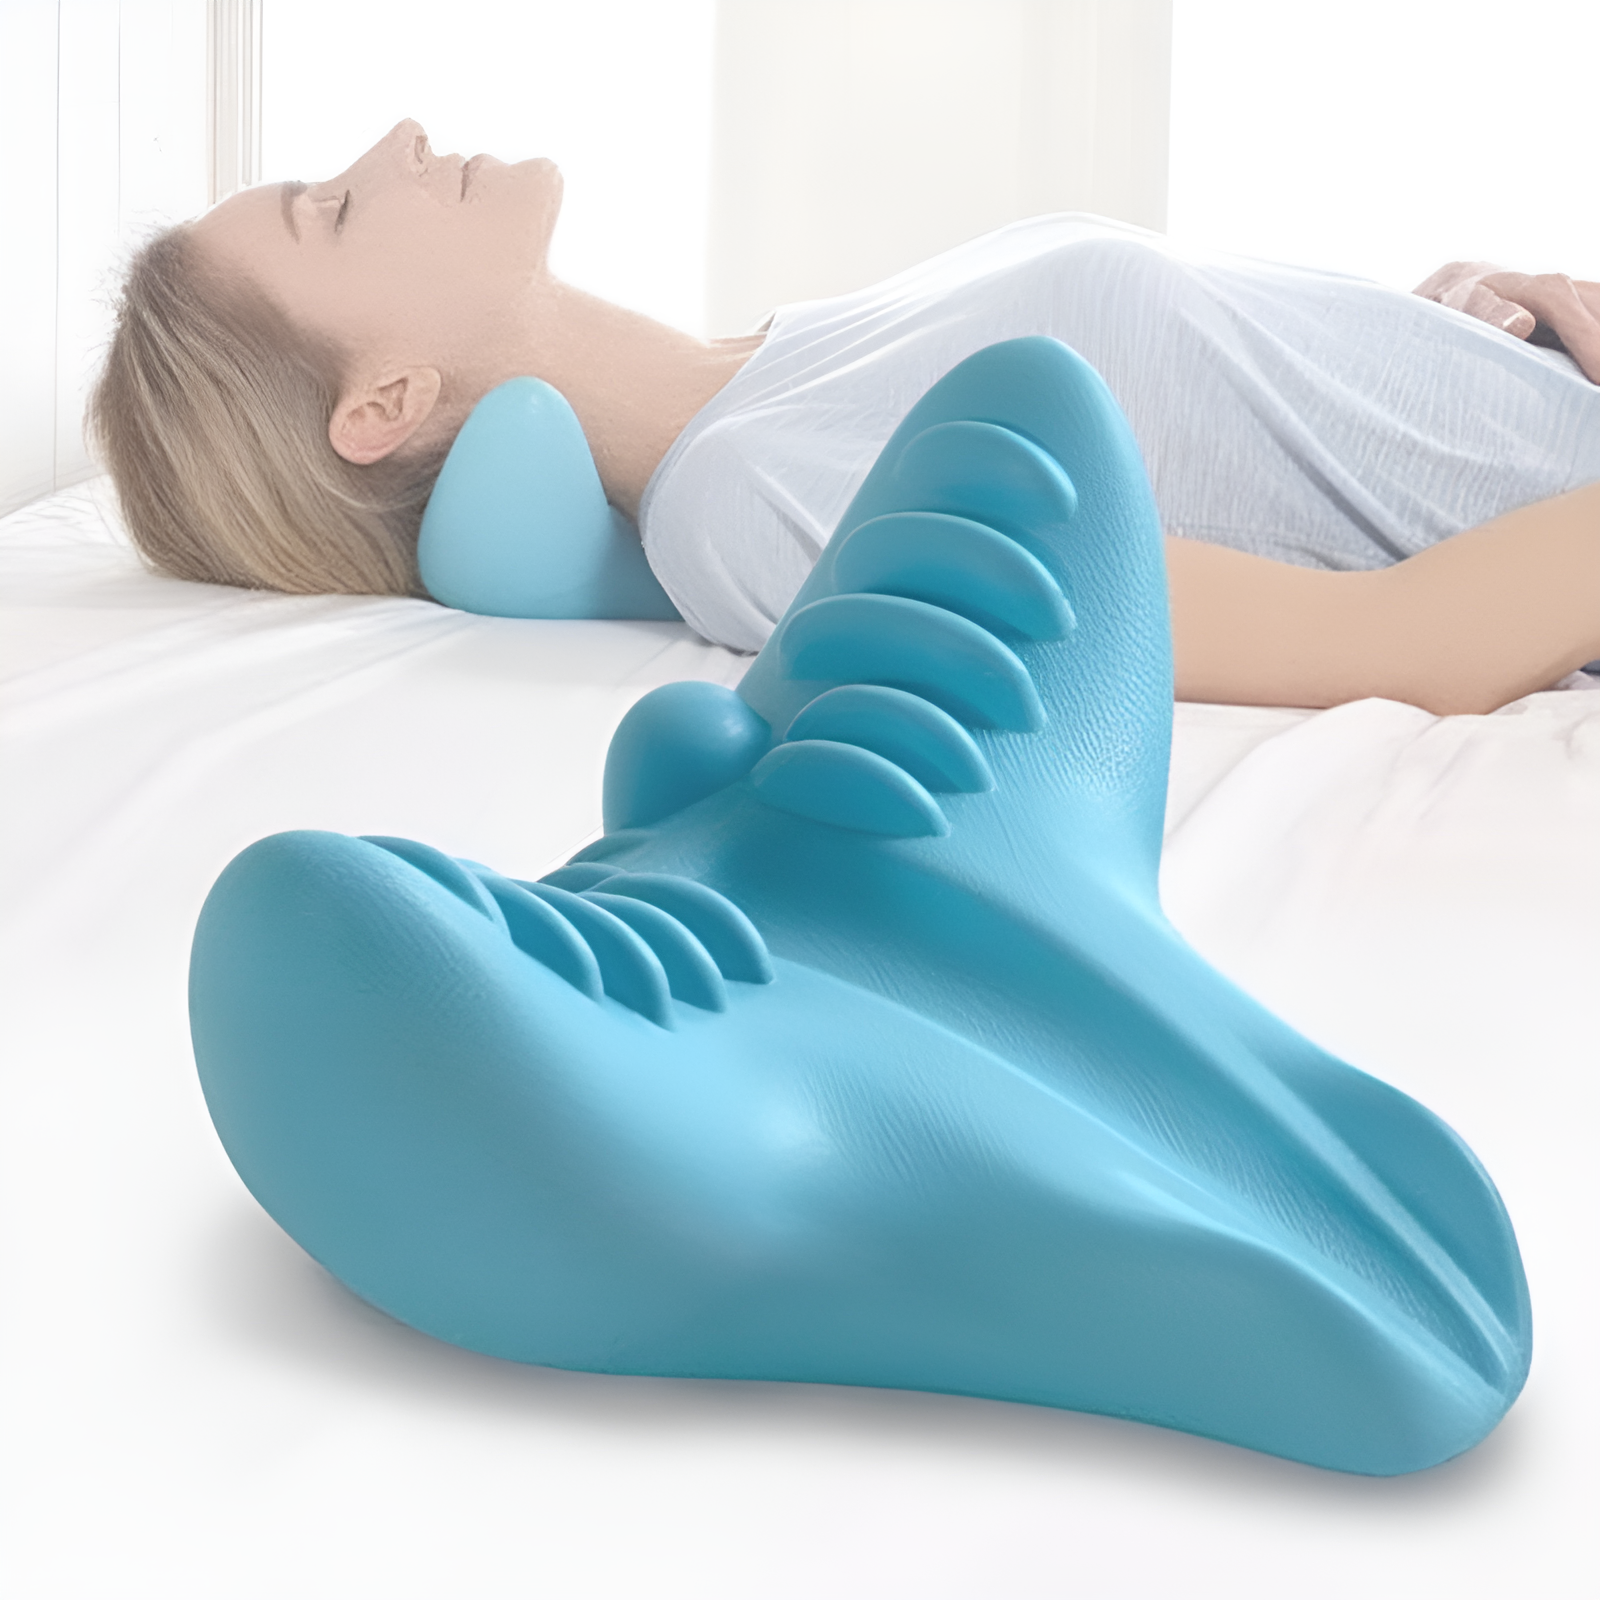 RelaxoFlex™ - Entspannen Sie Ihren Nacken | 50% RABATT